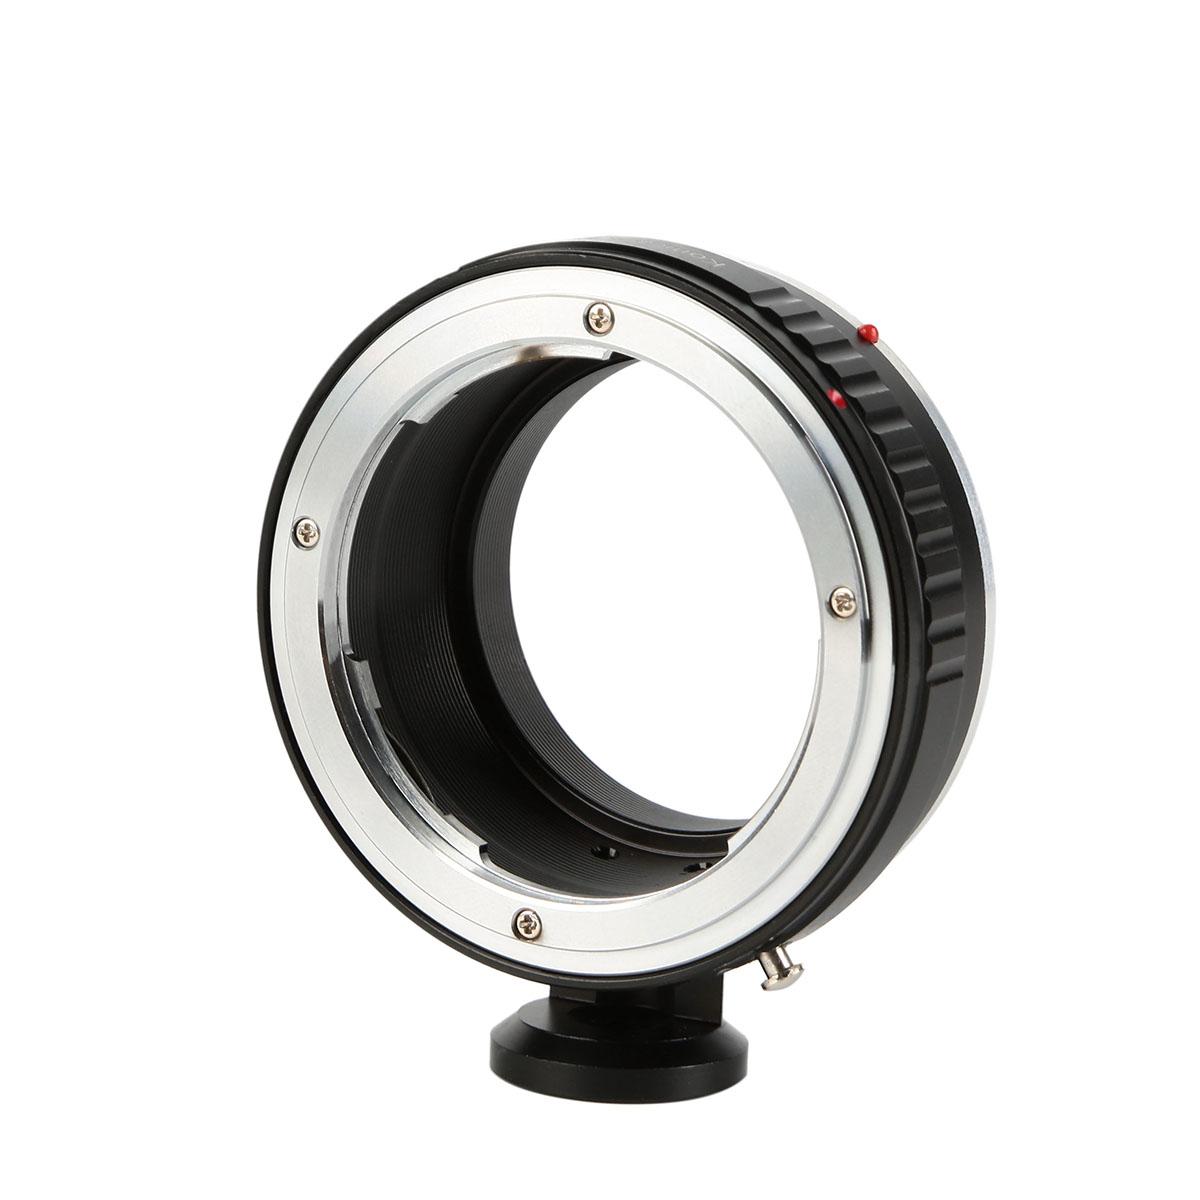 Konica-EOS M Bague Adaptation pour Objectif Konica AR vers Canon EOS M Monture Appareil Photo